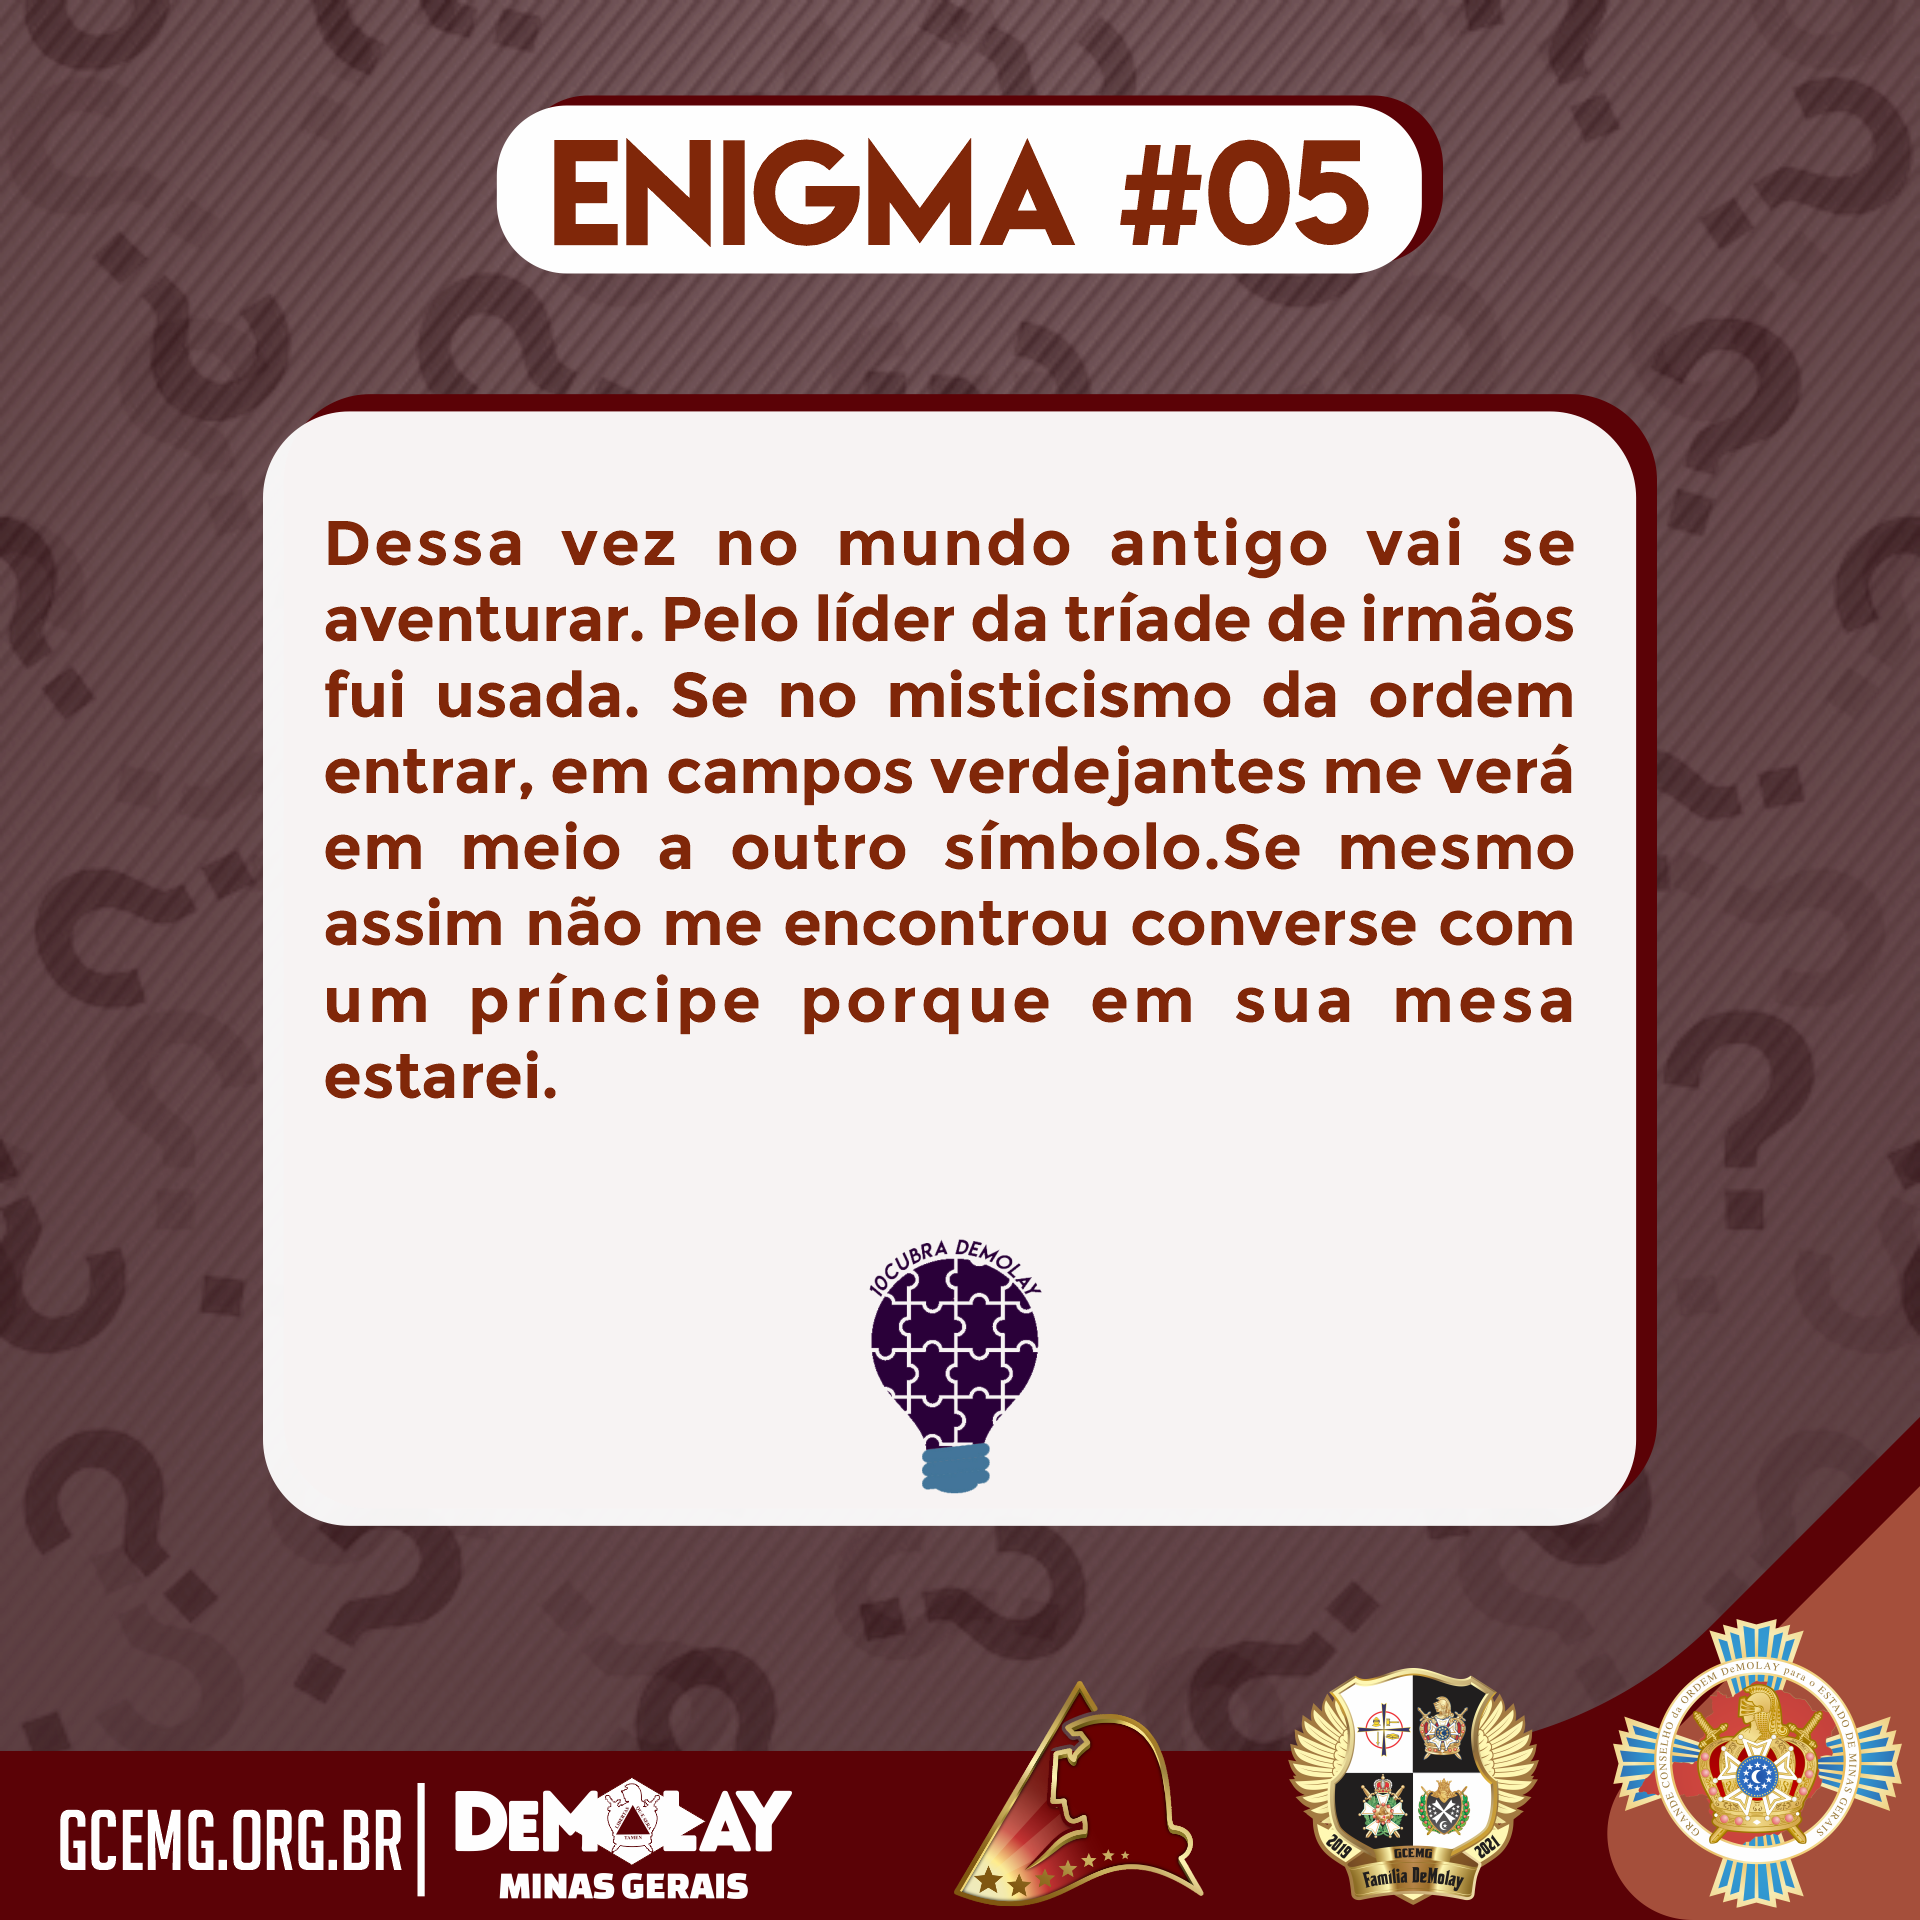 10cubra DeMolay: Enigma #05